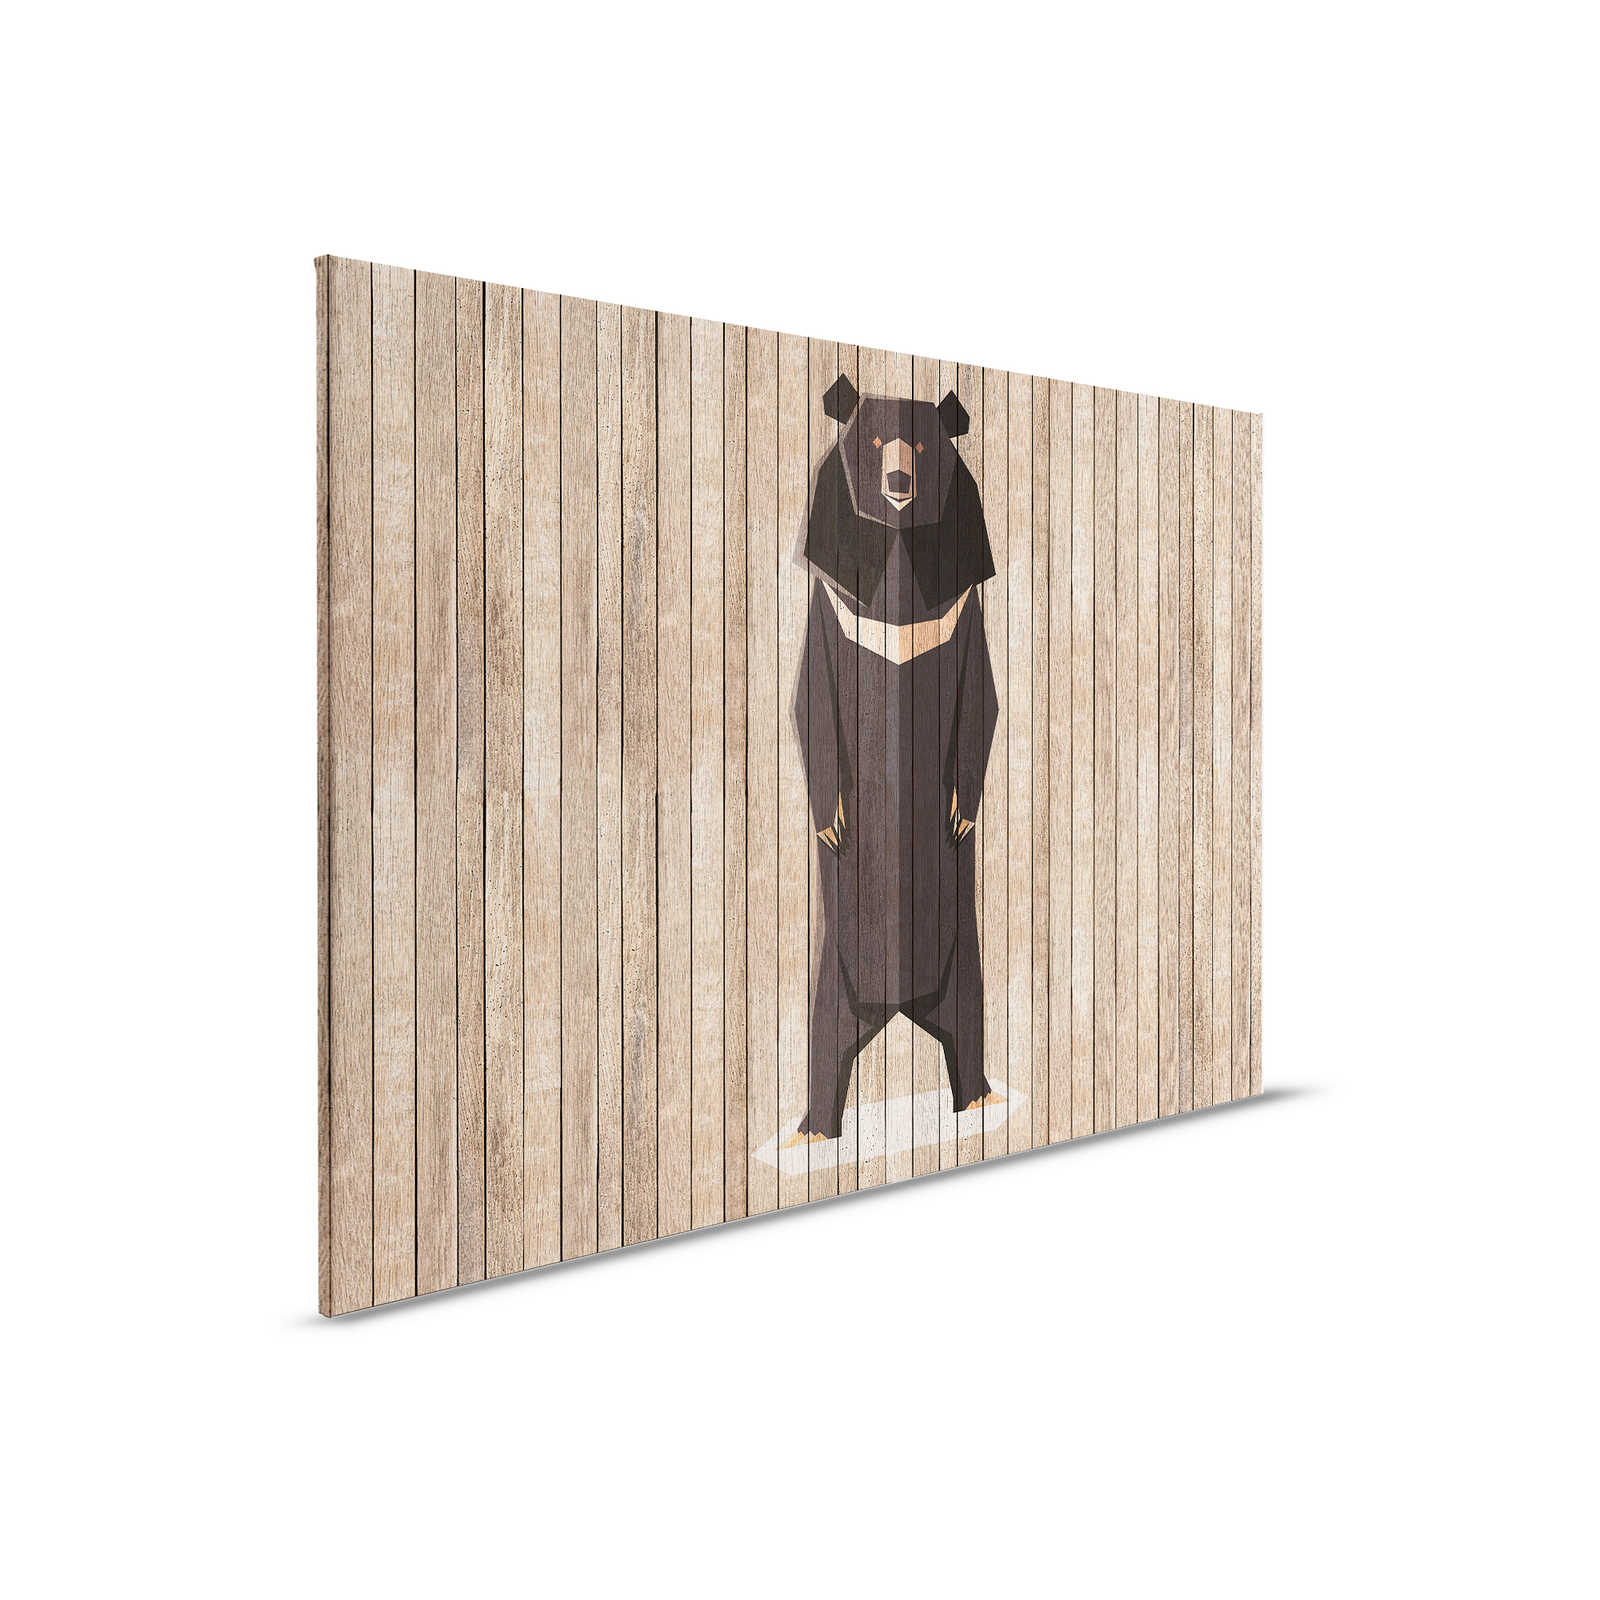         Born to Be Wild 1 - Leinwandbild Bretterwand mit Bären - Holzpaneele breit – 0,90 m x 0,60 m
    